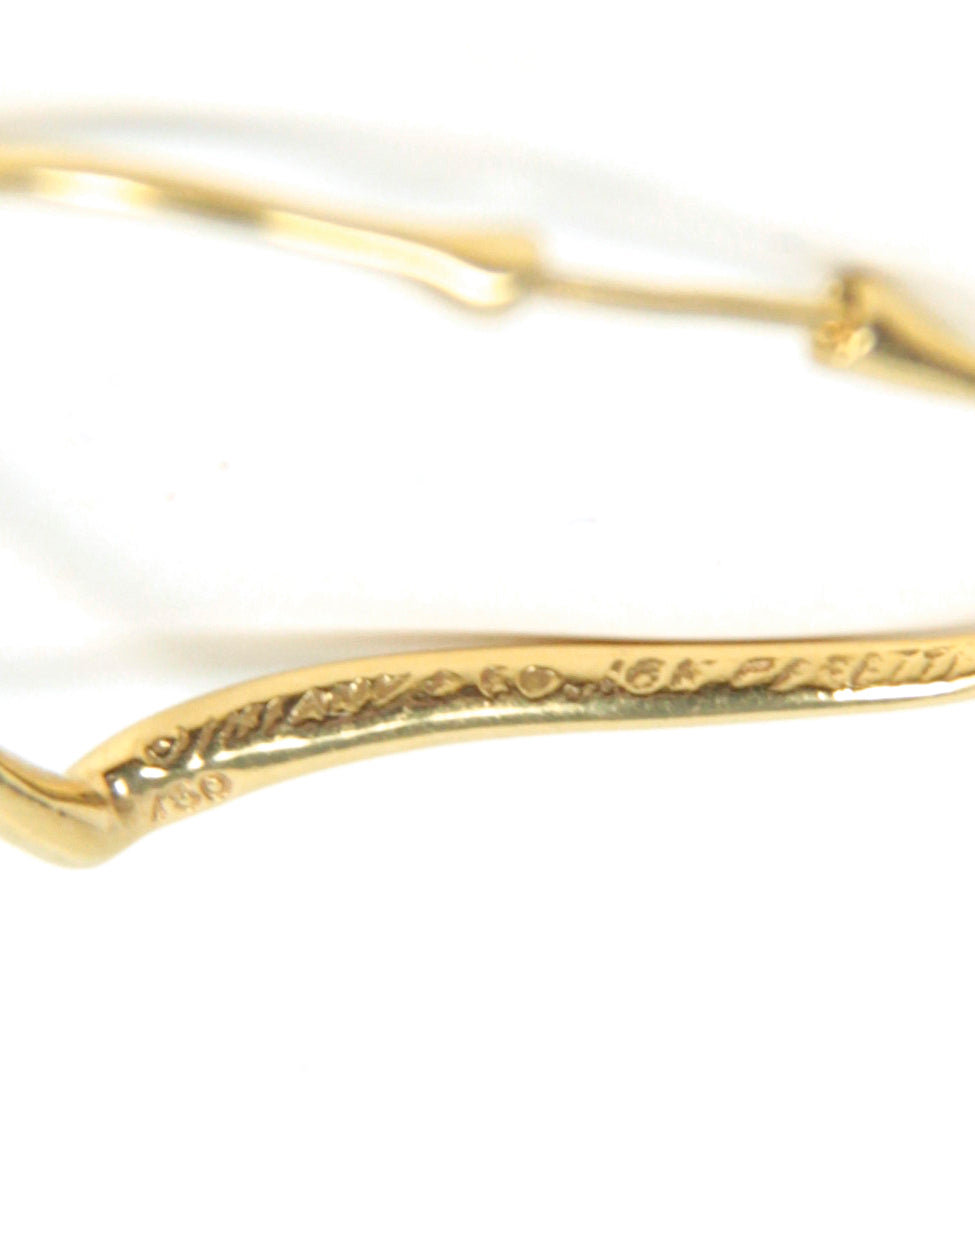 Tiffany & Co 18K Gold Peretti Small Open Heart Hoop Earrings